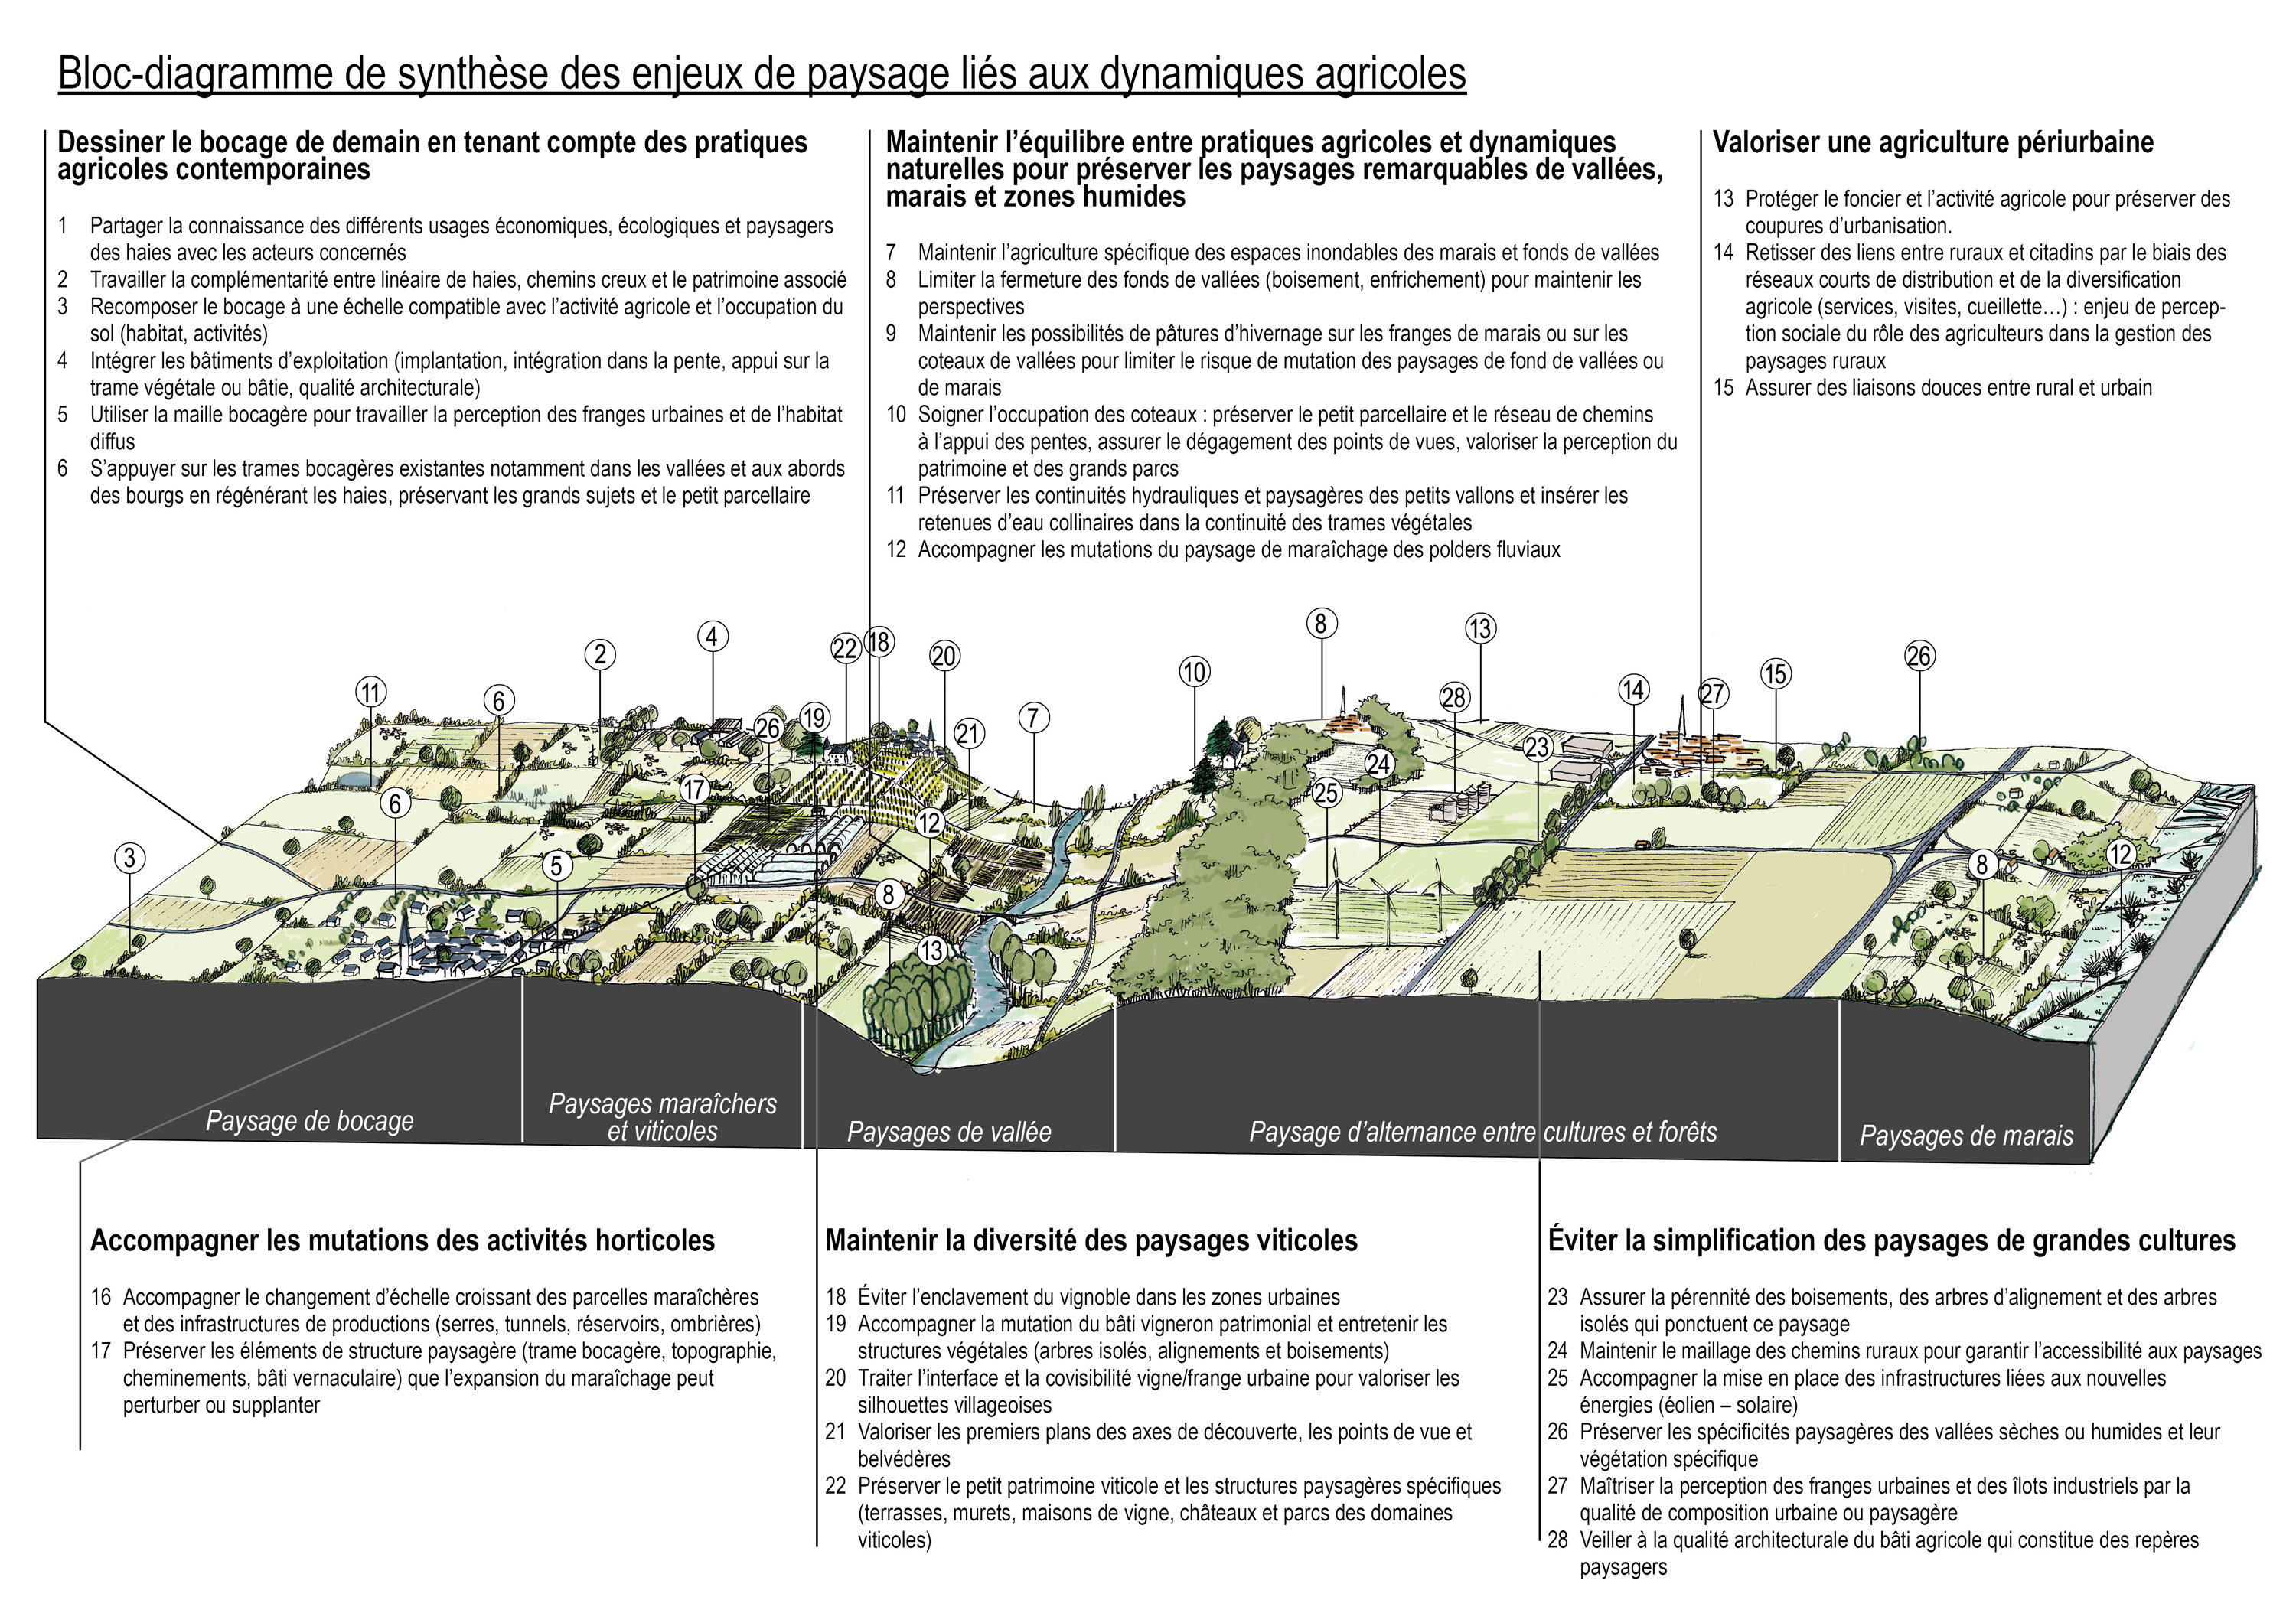 Bloc-diagramme de synthèse des enjeux de paysager liés aux évolutions agricoles en grand format (nouvelle fenêtre)